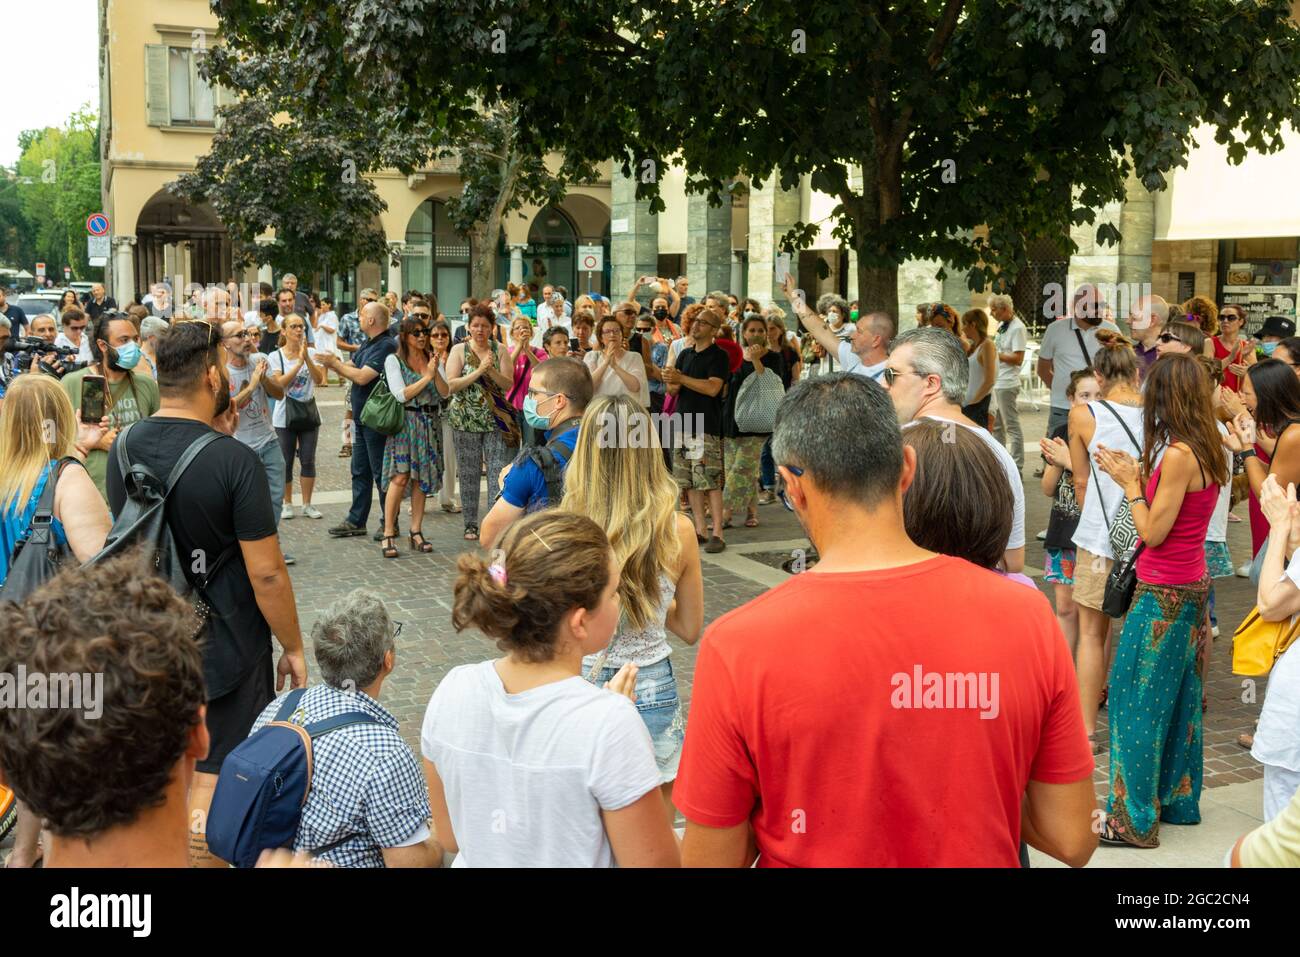 CREMONA, ITALIE - 24 juillet 2021 : une foule de personnes protestant contre la vaccination Covid-19 à Cremona, Italie Banque D'Images